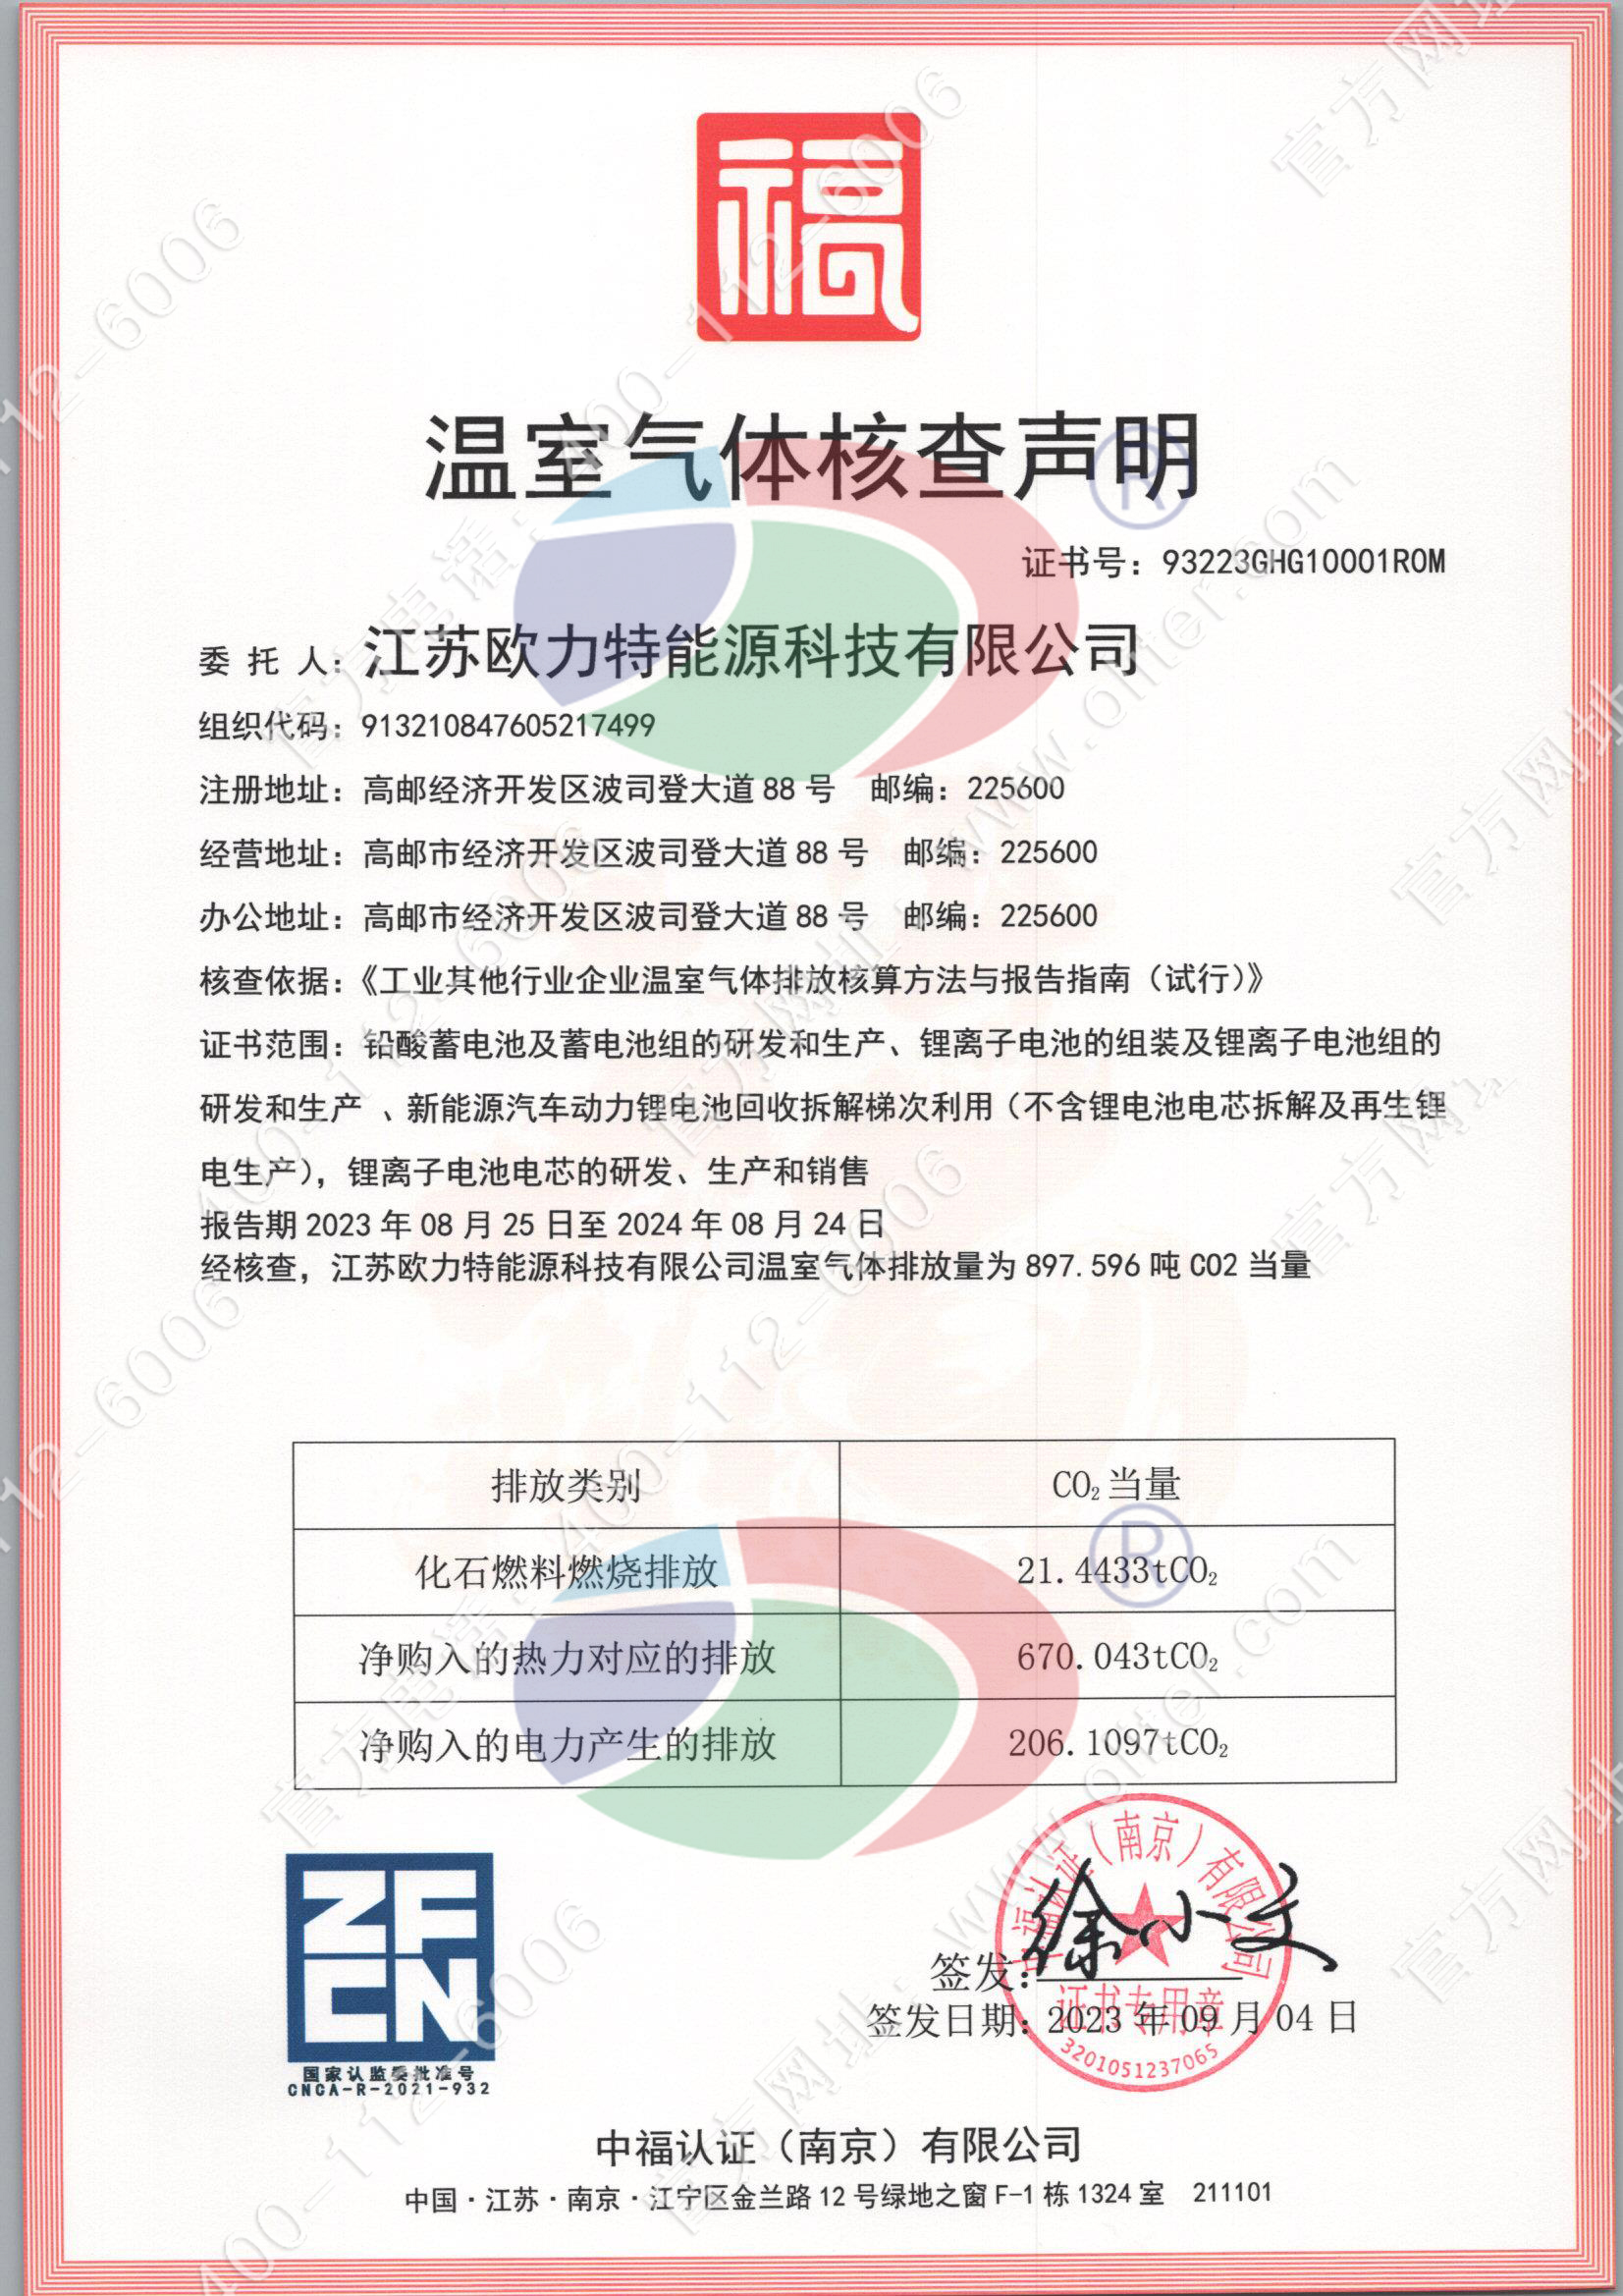 江苏欧力特能源科技有限公司温室气体证书.jpg